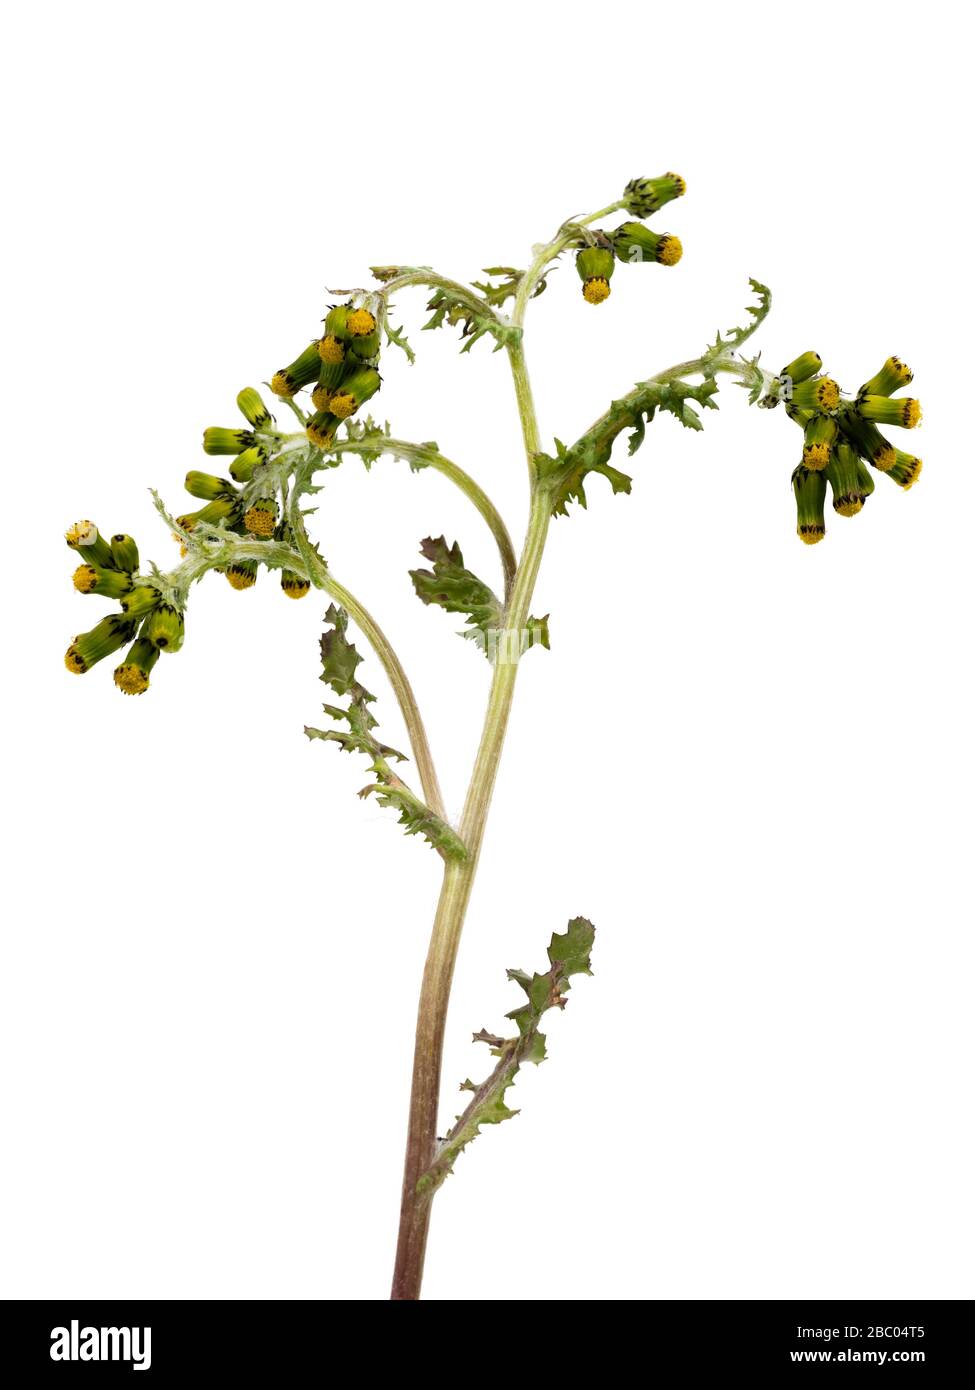 Fiori e fogliame delle specie annuali di erbacce britanniche, Senecio vulgaris, Groundsel, su sfondo bianco Foto Stock